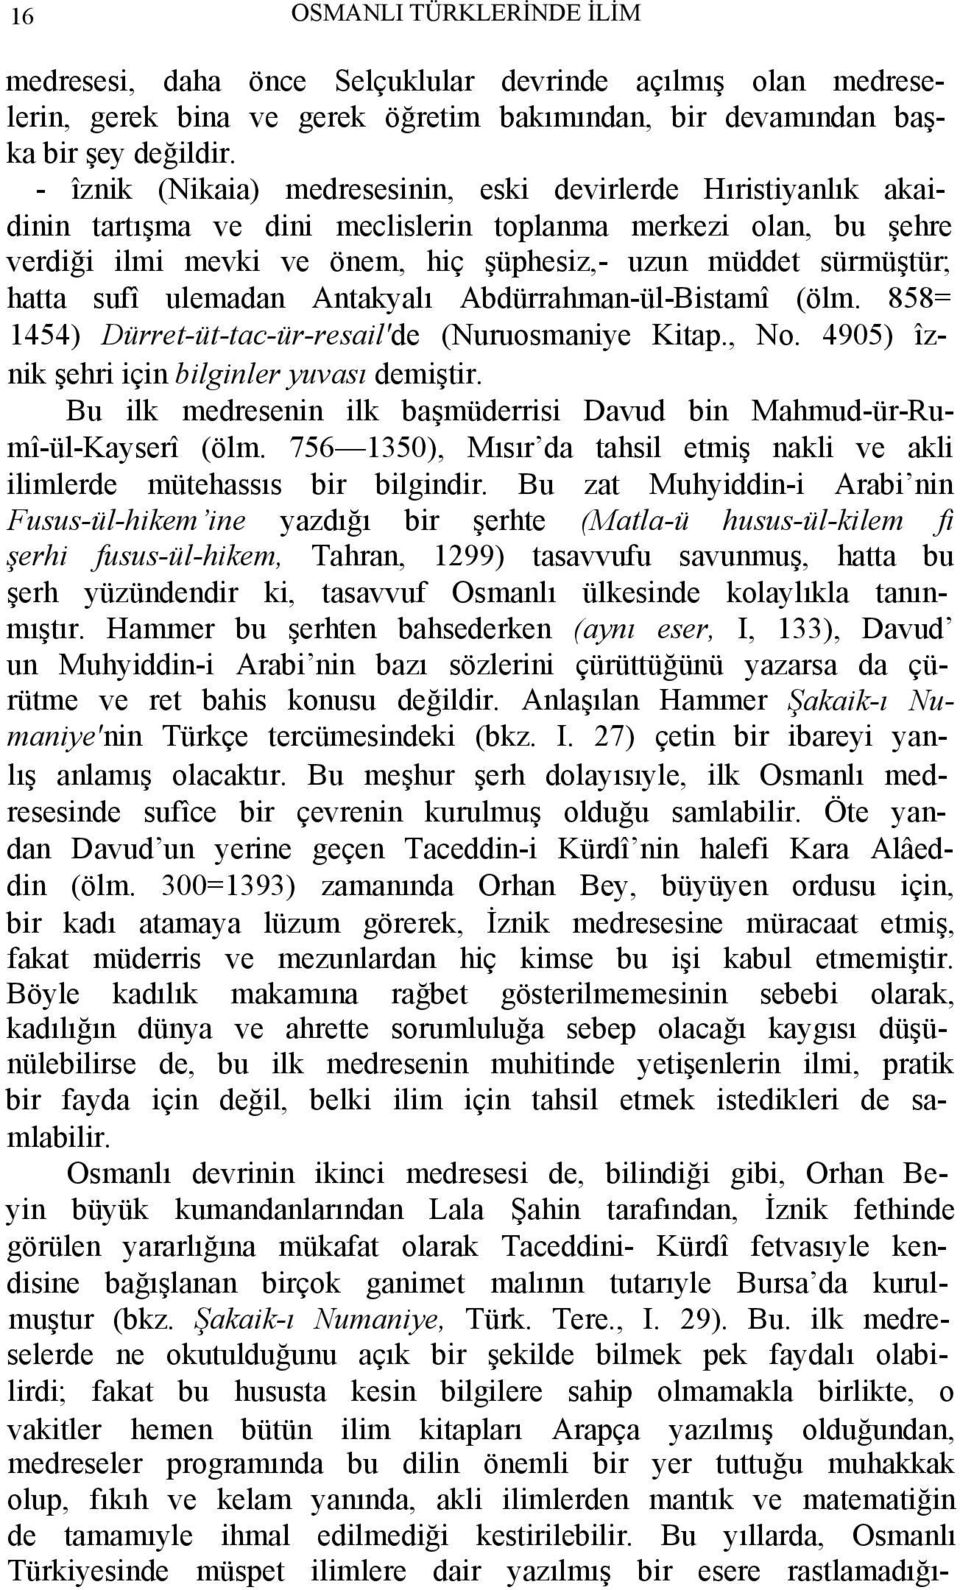 hatta sufî ulemadan Antakyalı Abdürrahman-ül-Bistamî (ölm. 858= 1454) Dürret-üt-tac-ür-resail'de (Nuruosmaniye Kitap., No. 4905) îznik şehri için bilginler yuvası demiştir.